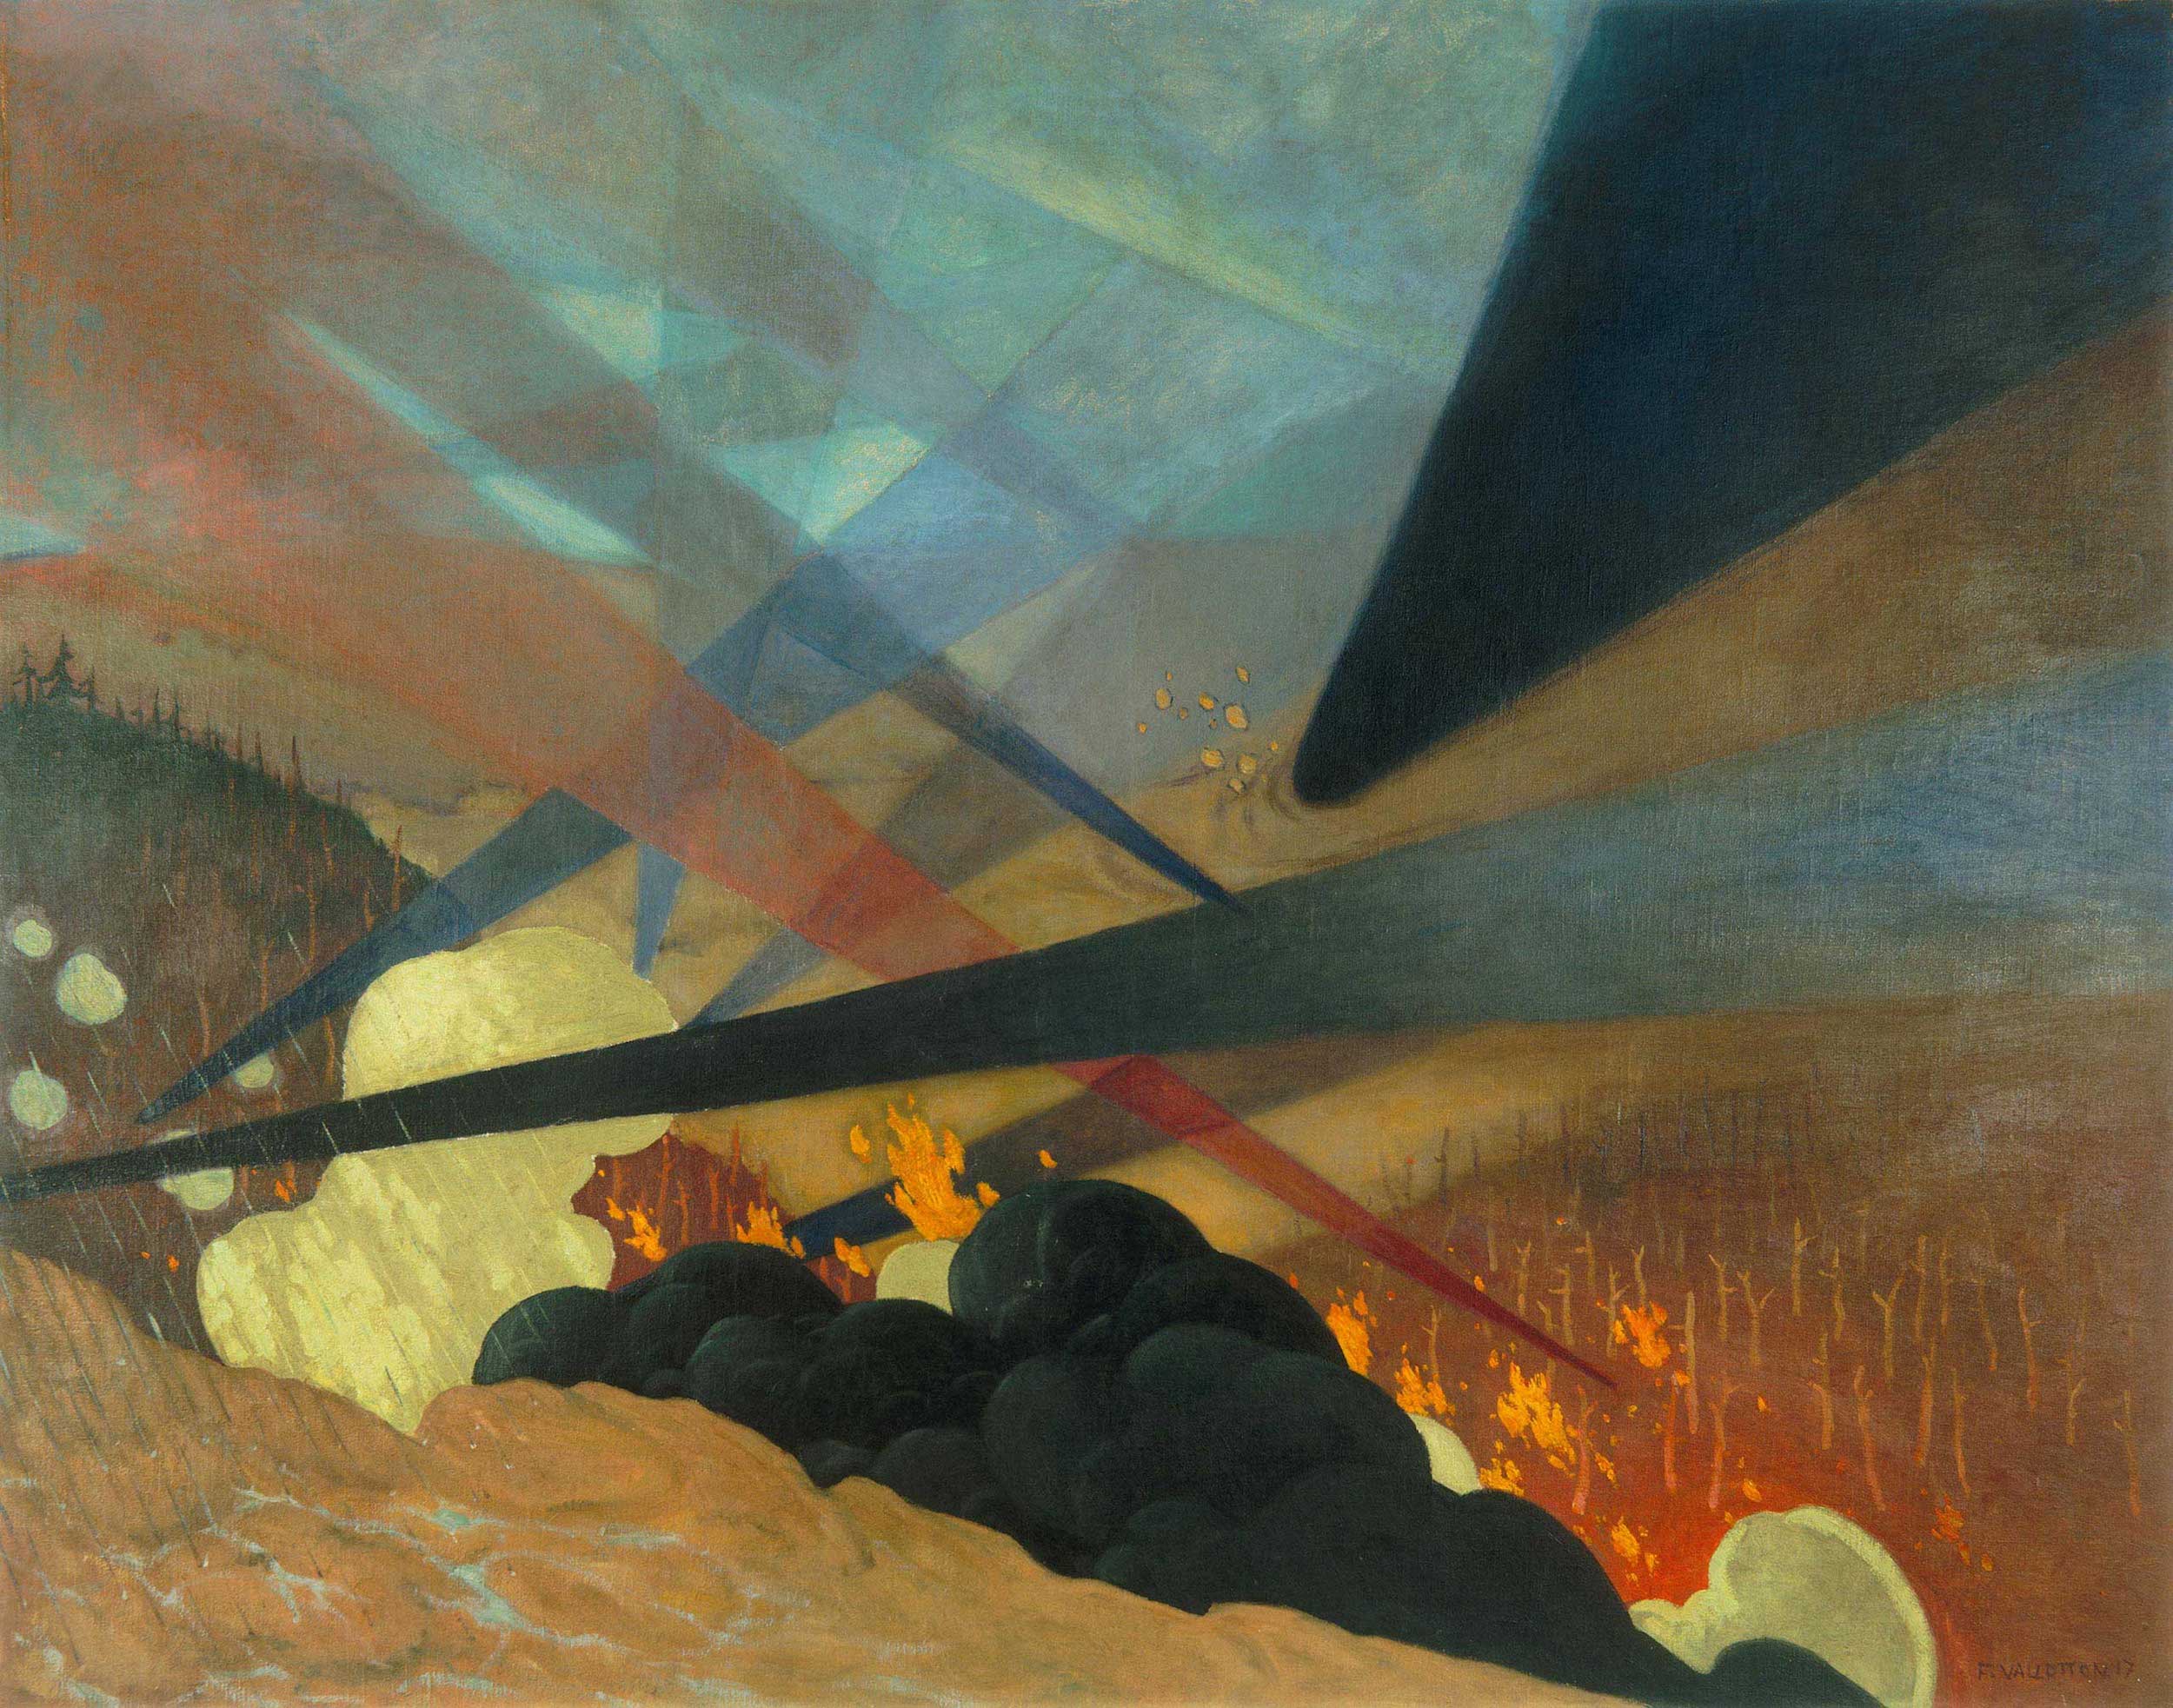 凡尔登 by 费利克斯 瓦洛顿 - 1917 